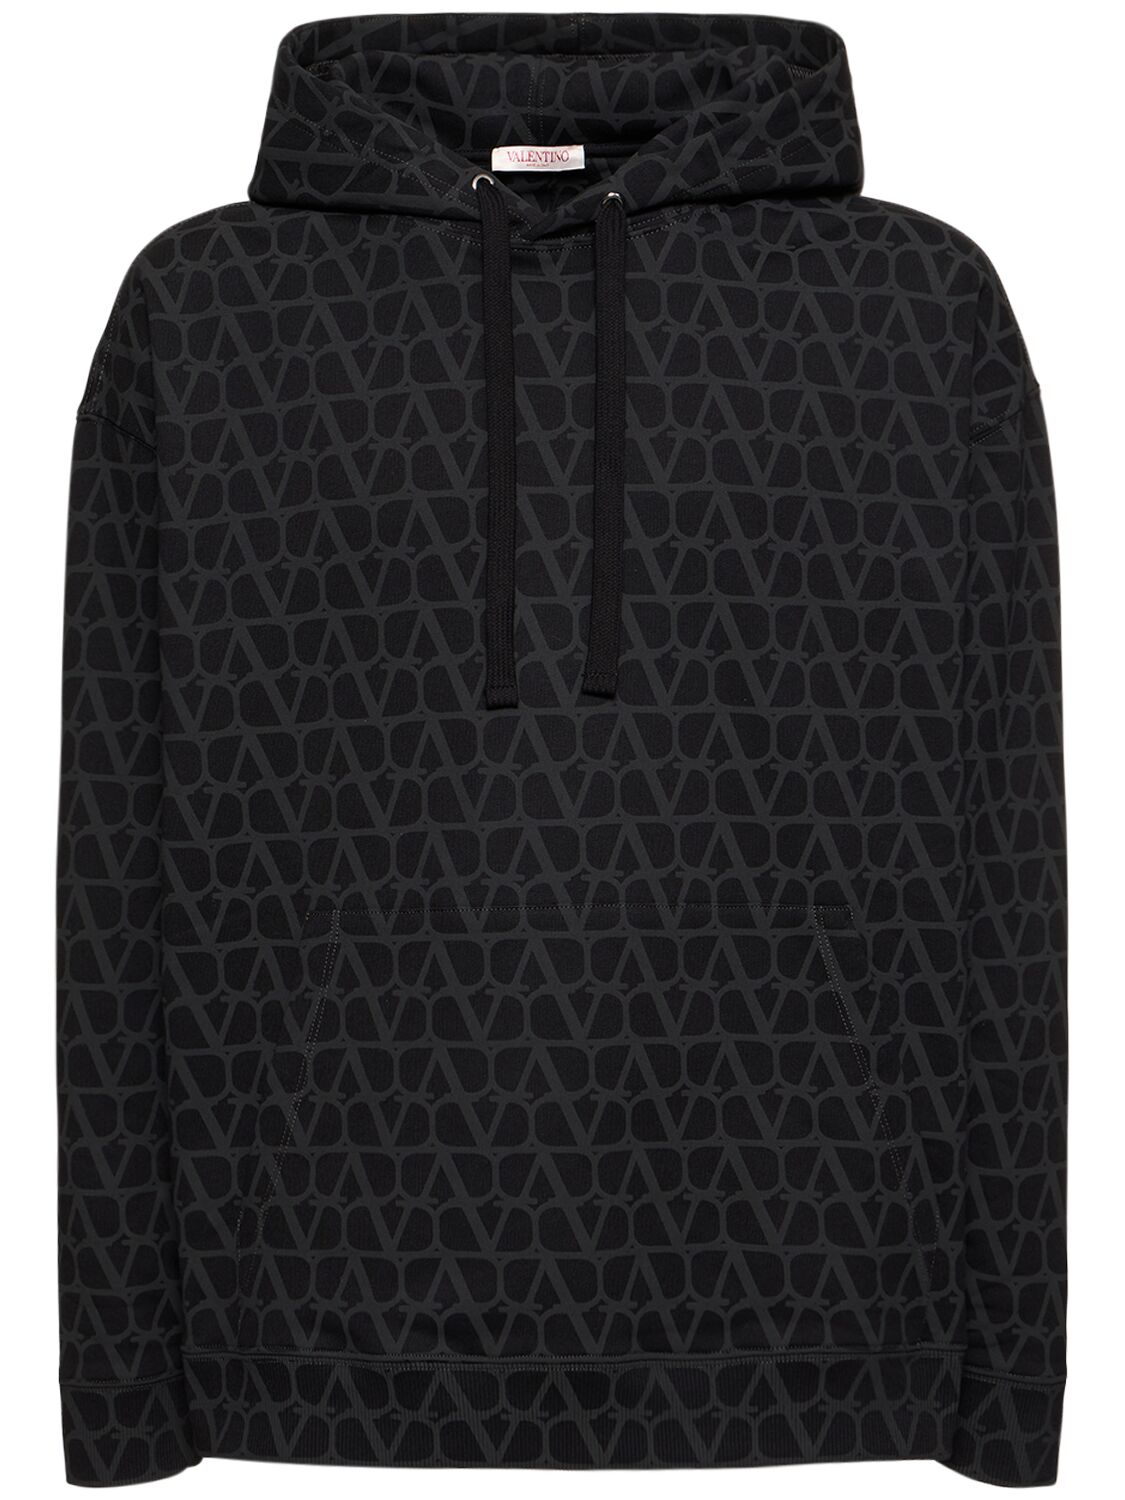 Toile Iconographe Hooded Sweatshirt – MEN > CLOTHING > SWEATSHIRTS